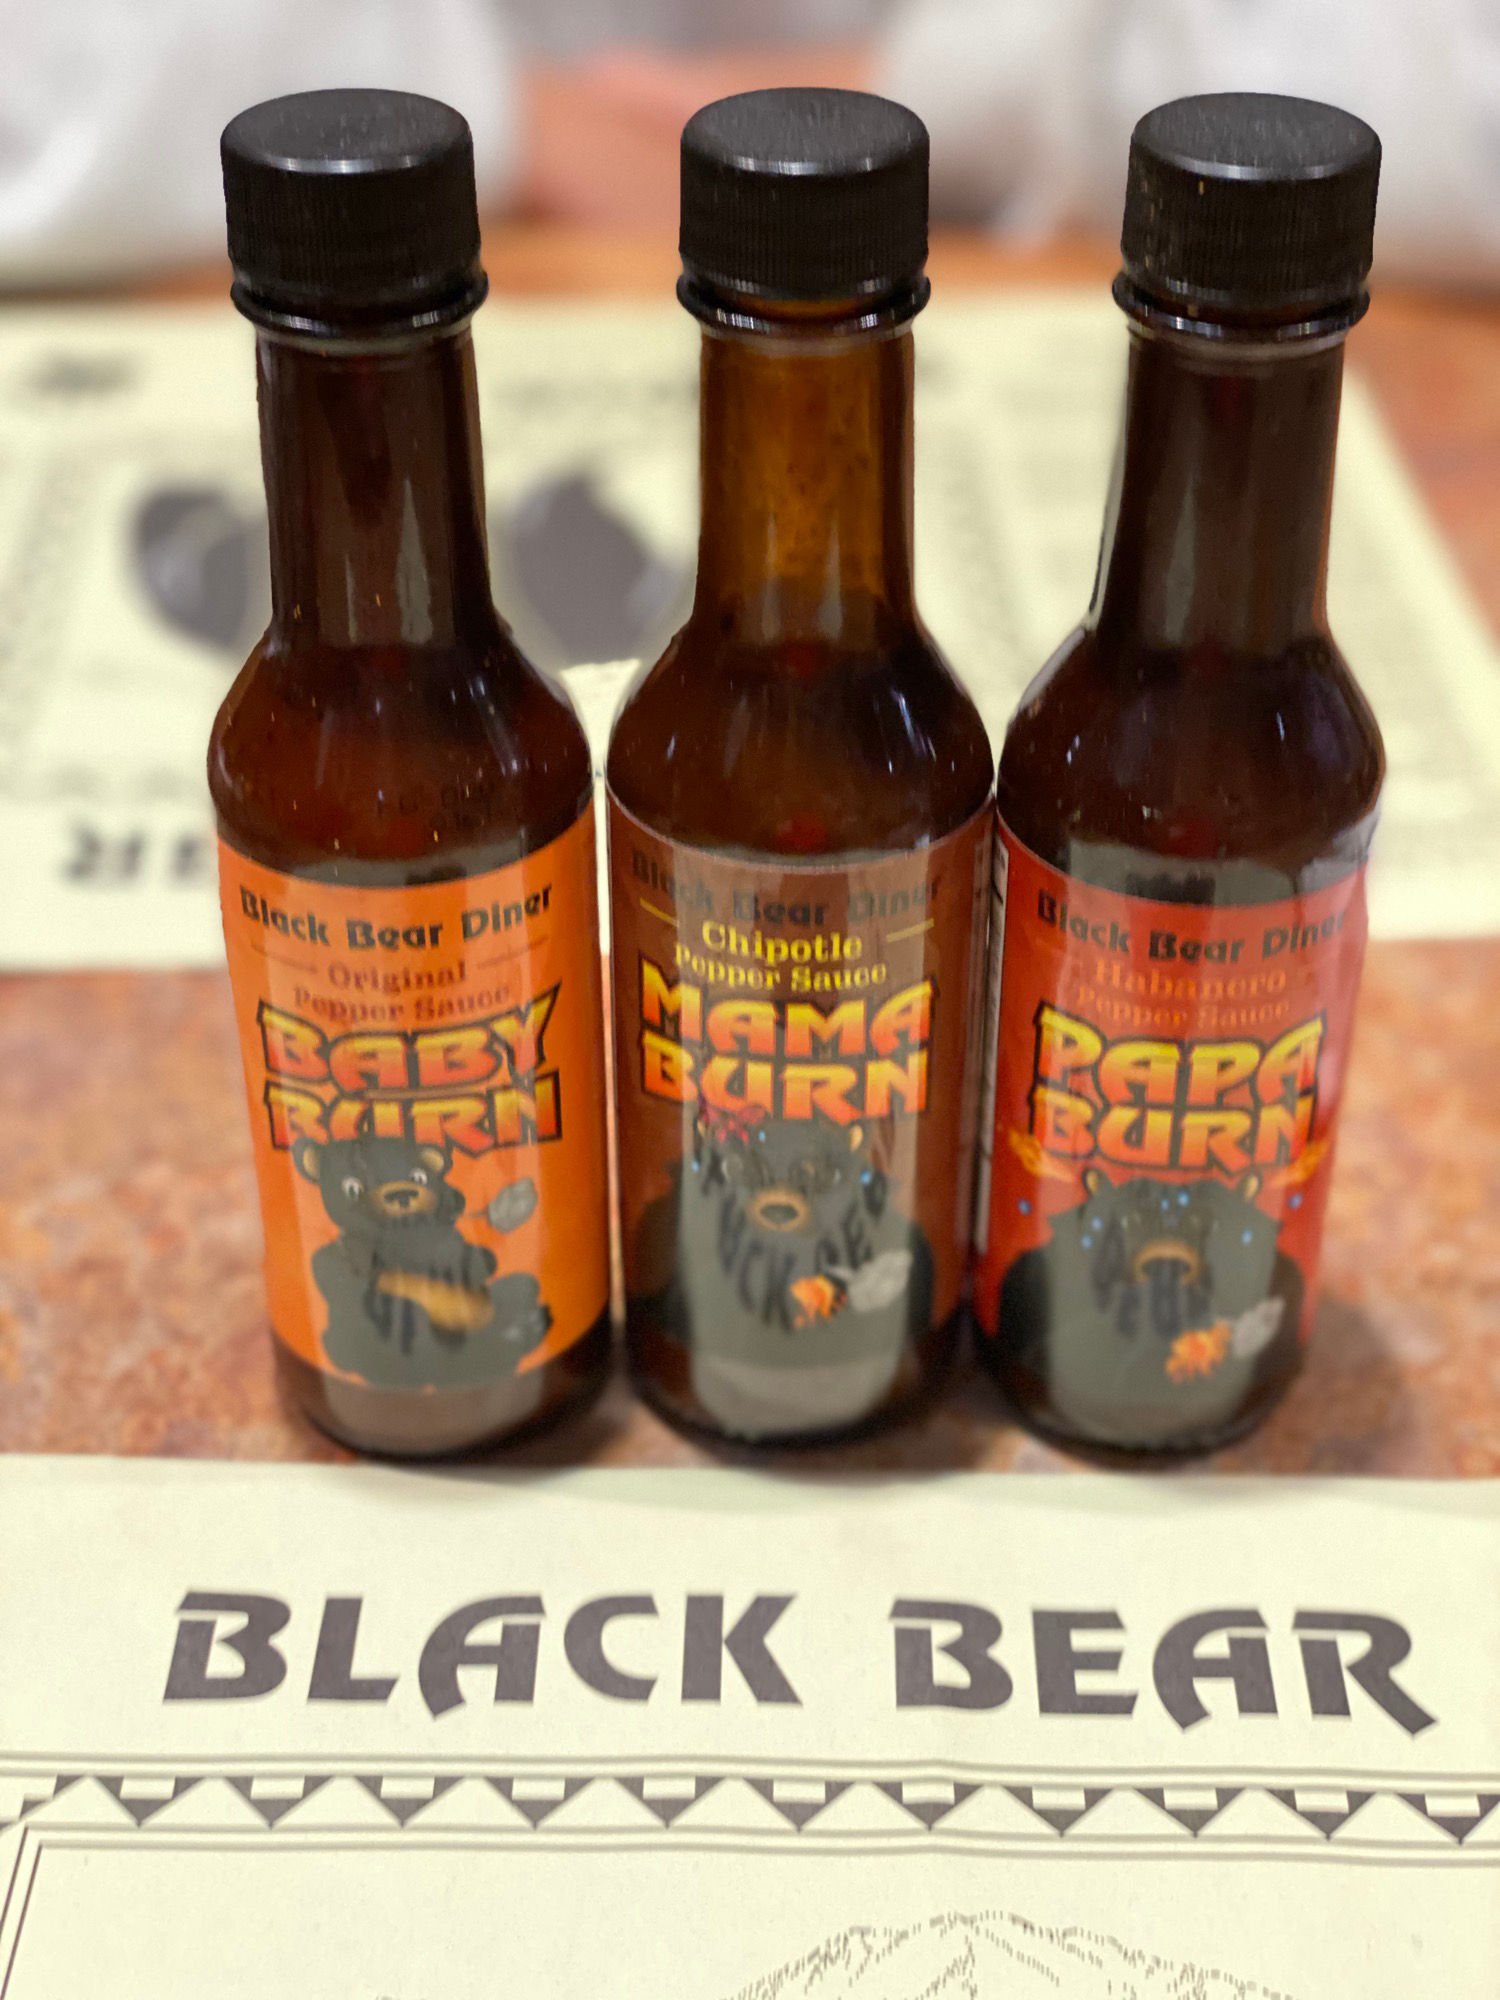 Black Bear Diner Pepper Sauce